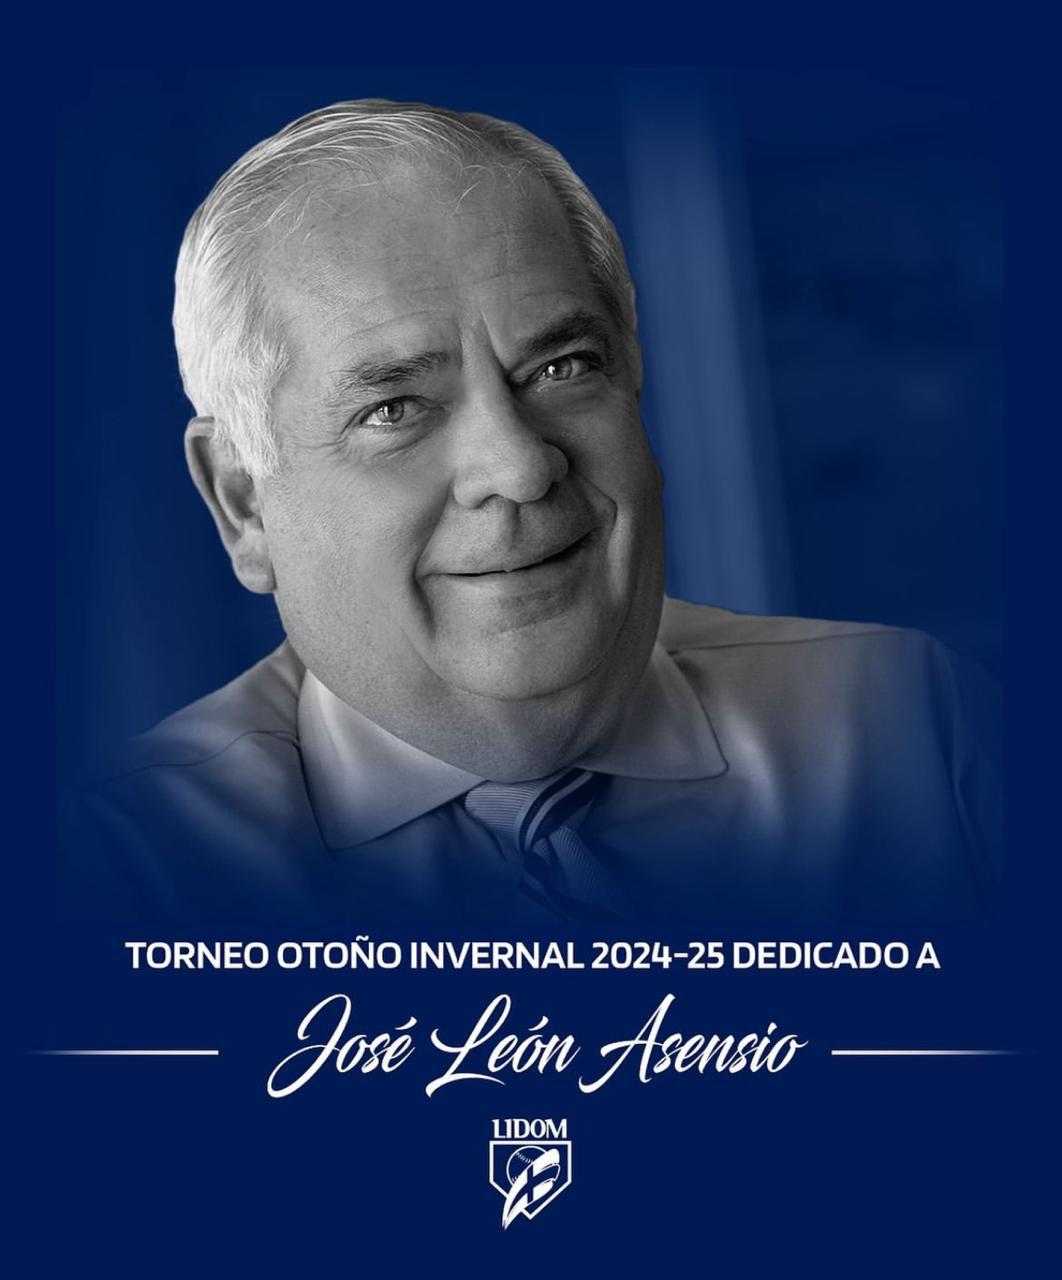 Lidom dedicará el torneo 2024-2025 a don José León Asensio